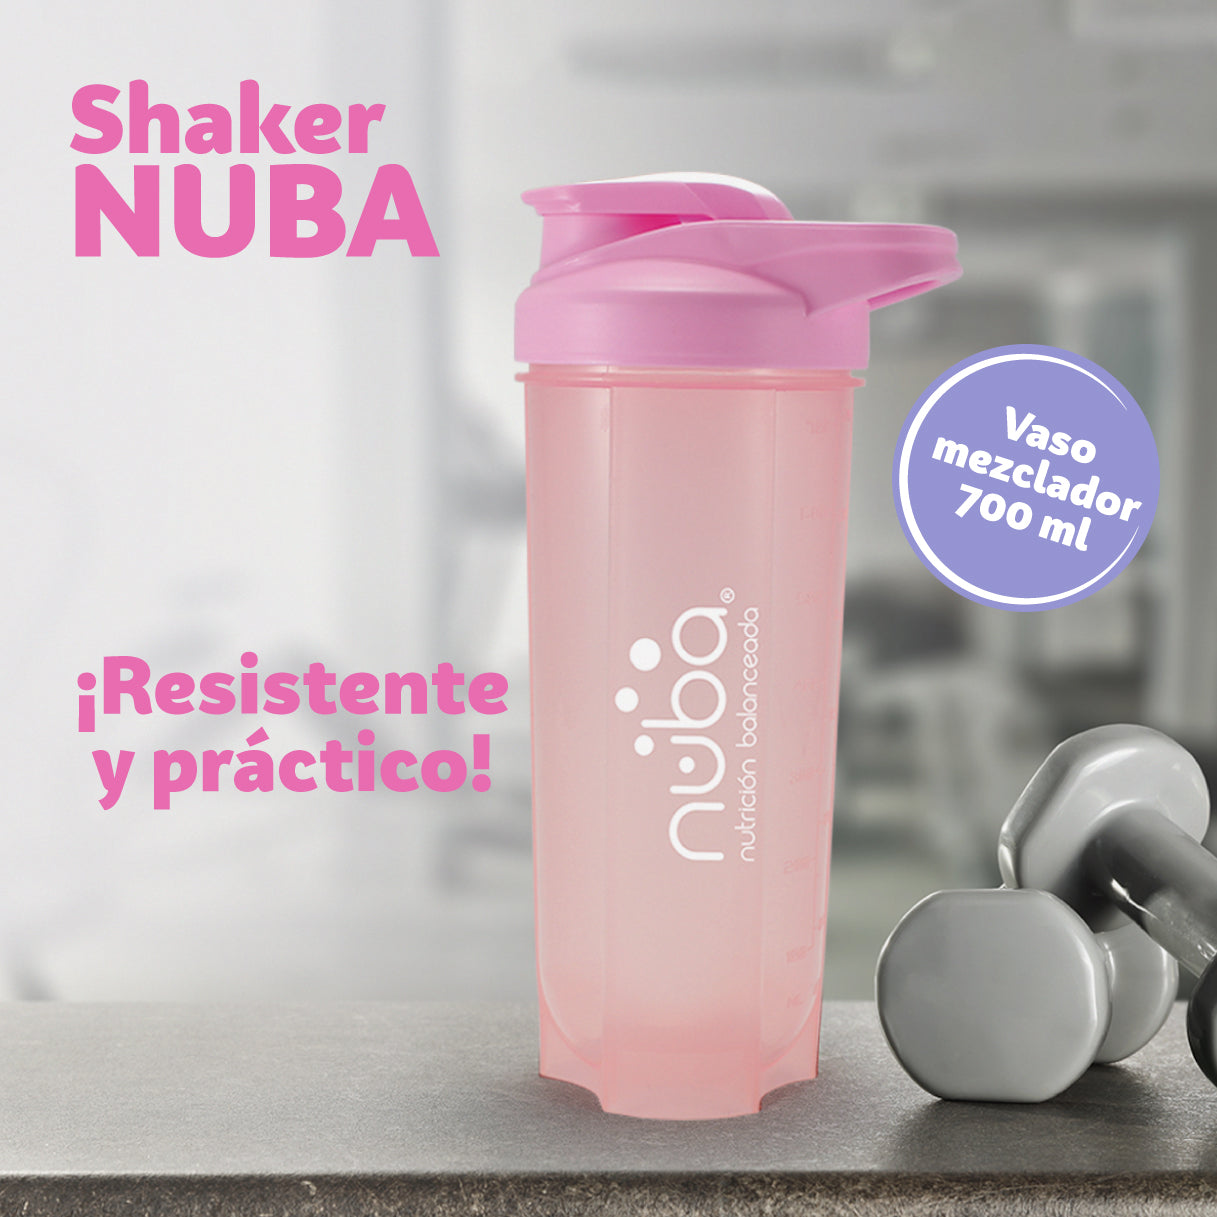 Nuba Vaso Shaker Mezclador de Plástico Color Rosa incluye 1 pieza Capacidad de 700 ml.